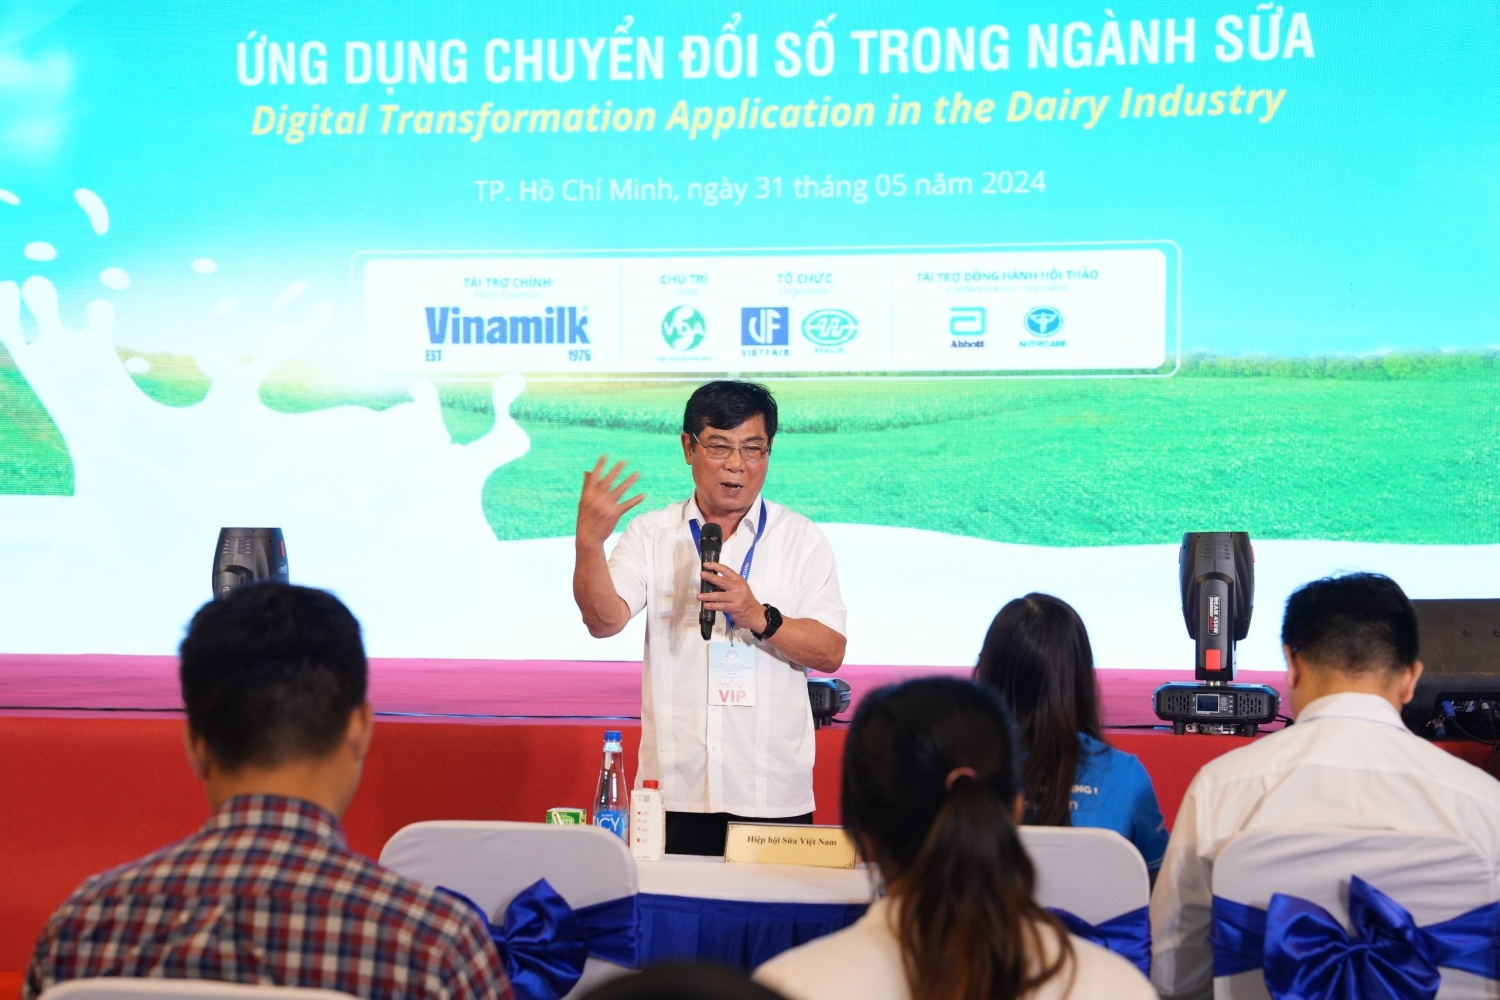 Chuyển đổi số và câu chuyện nâng cao vị thế sữa Việt Nam